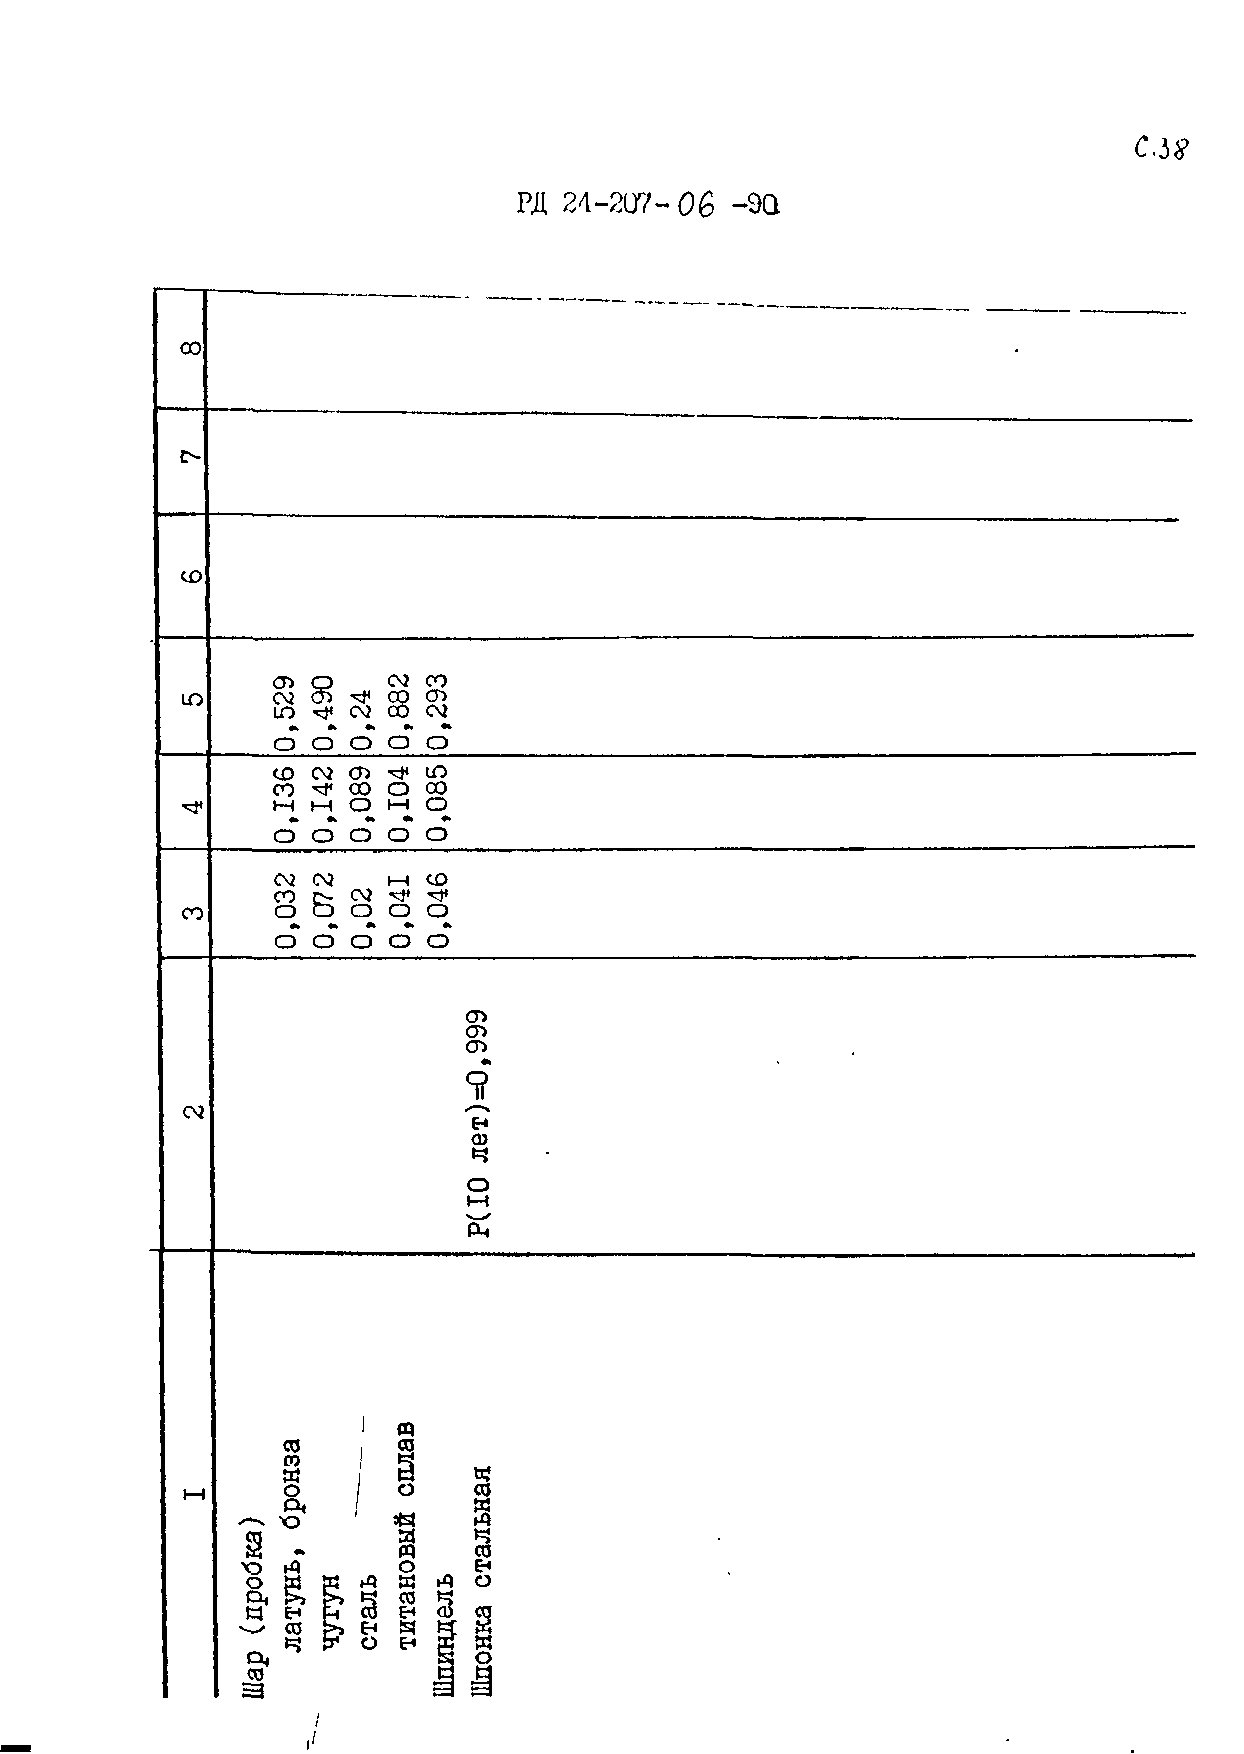 РД 24.207.06-90